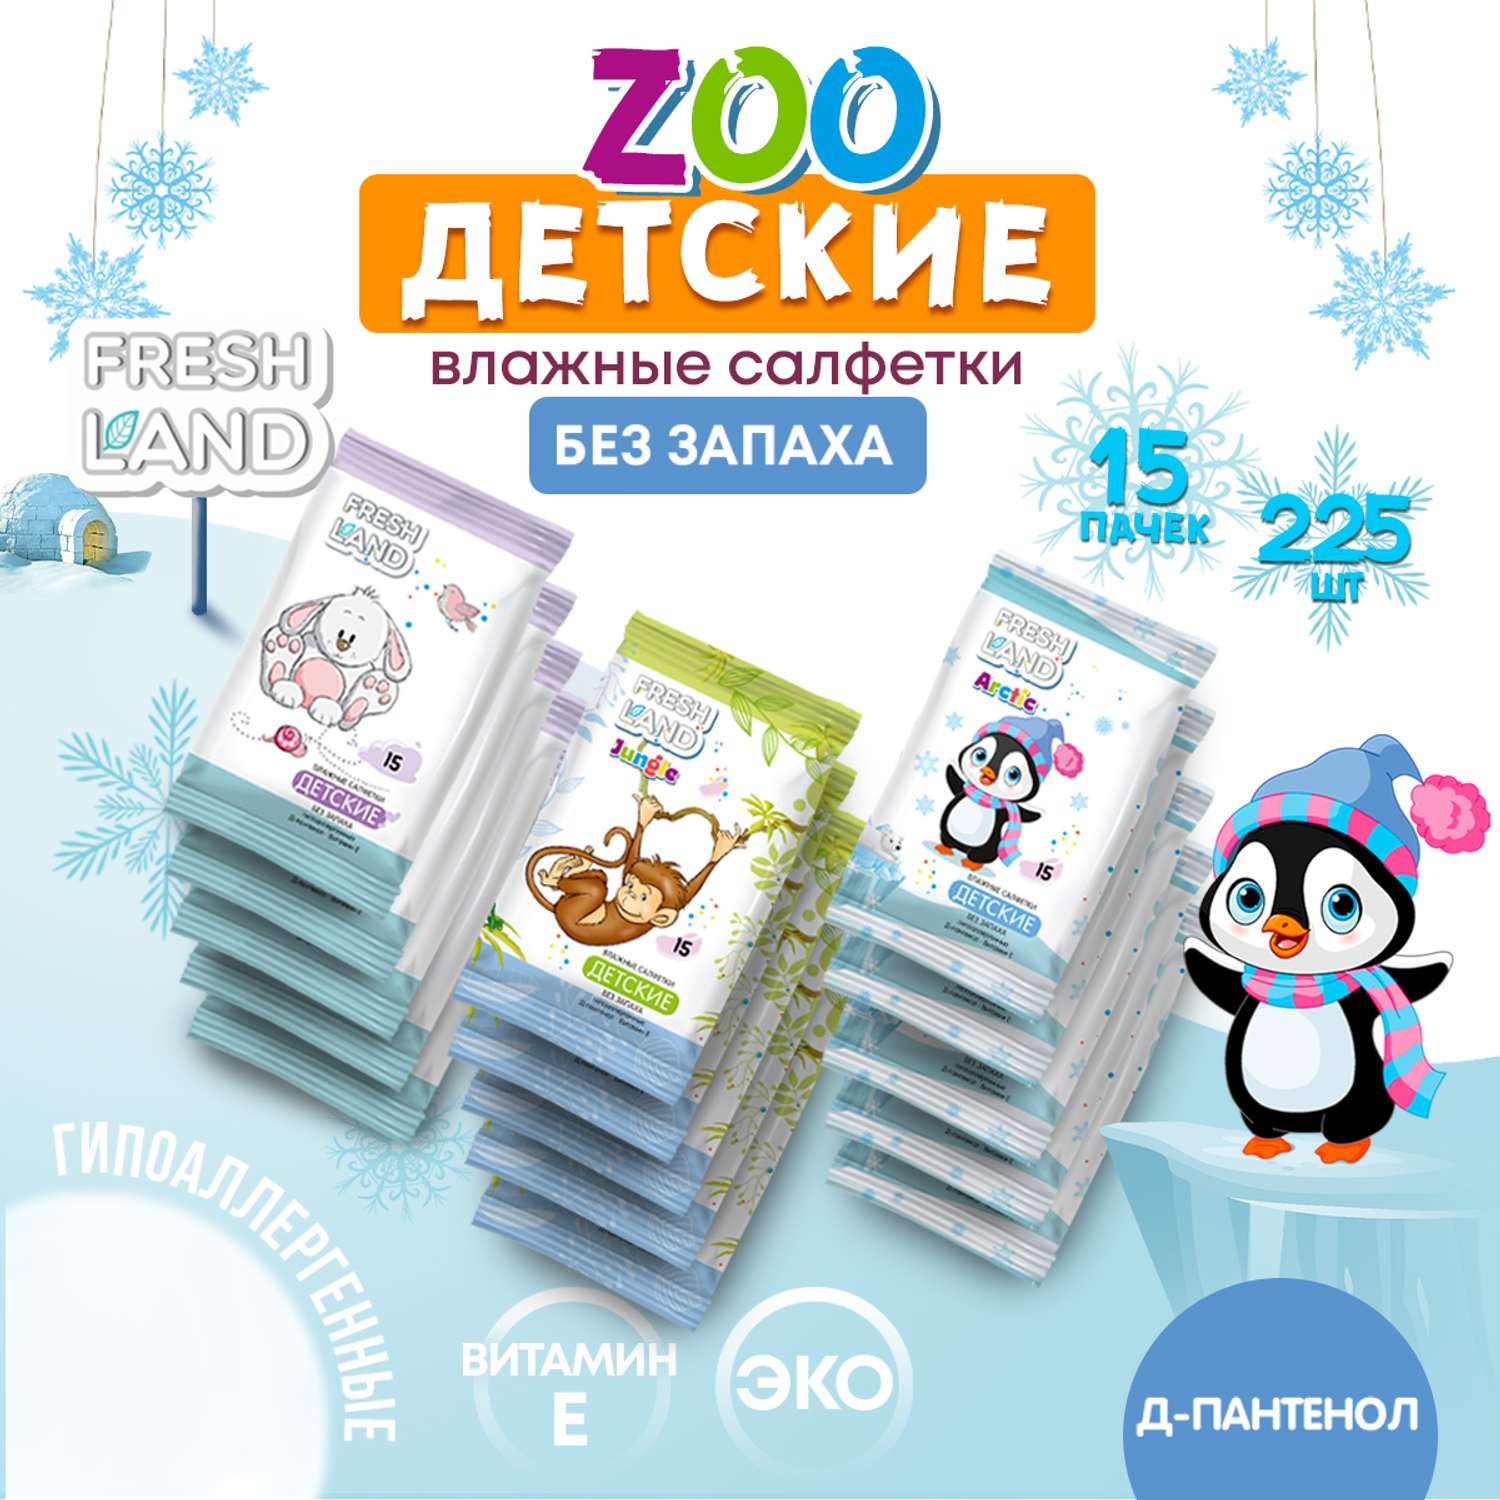 Влажные салфетки детские FRESHLAND Зоопарк 15х15шт без запаха - фото 3